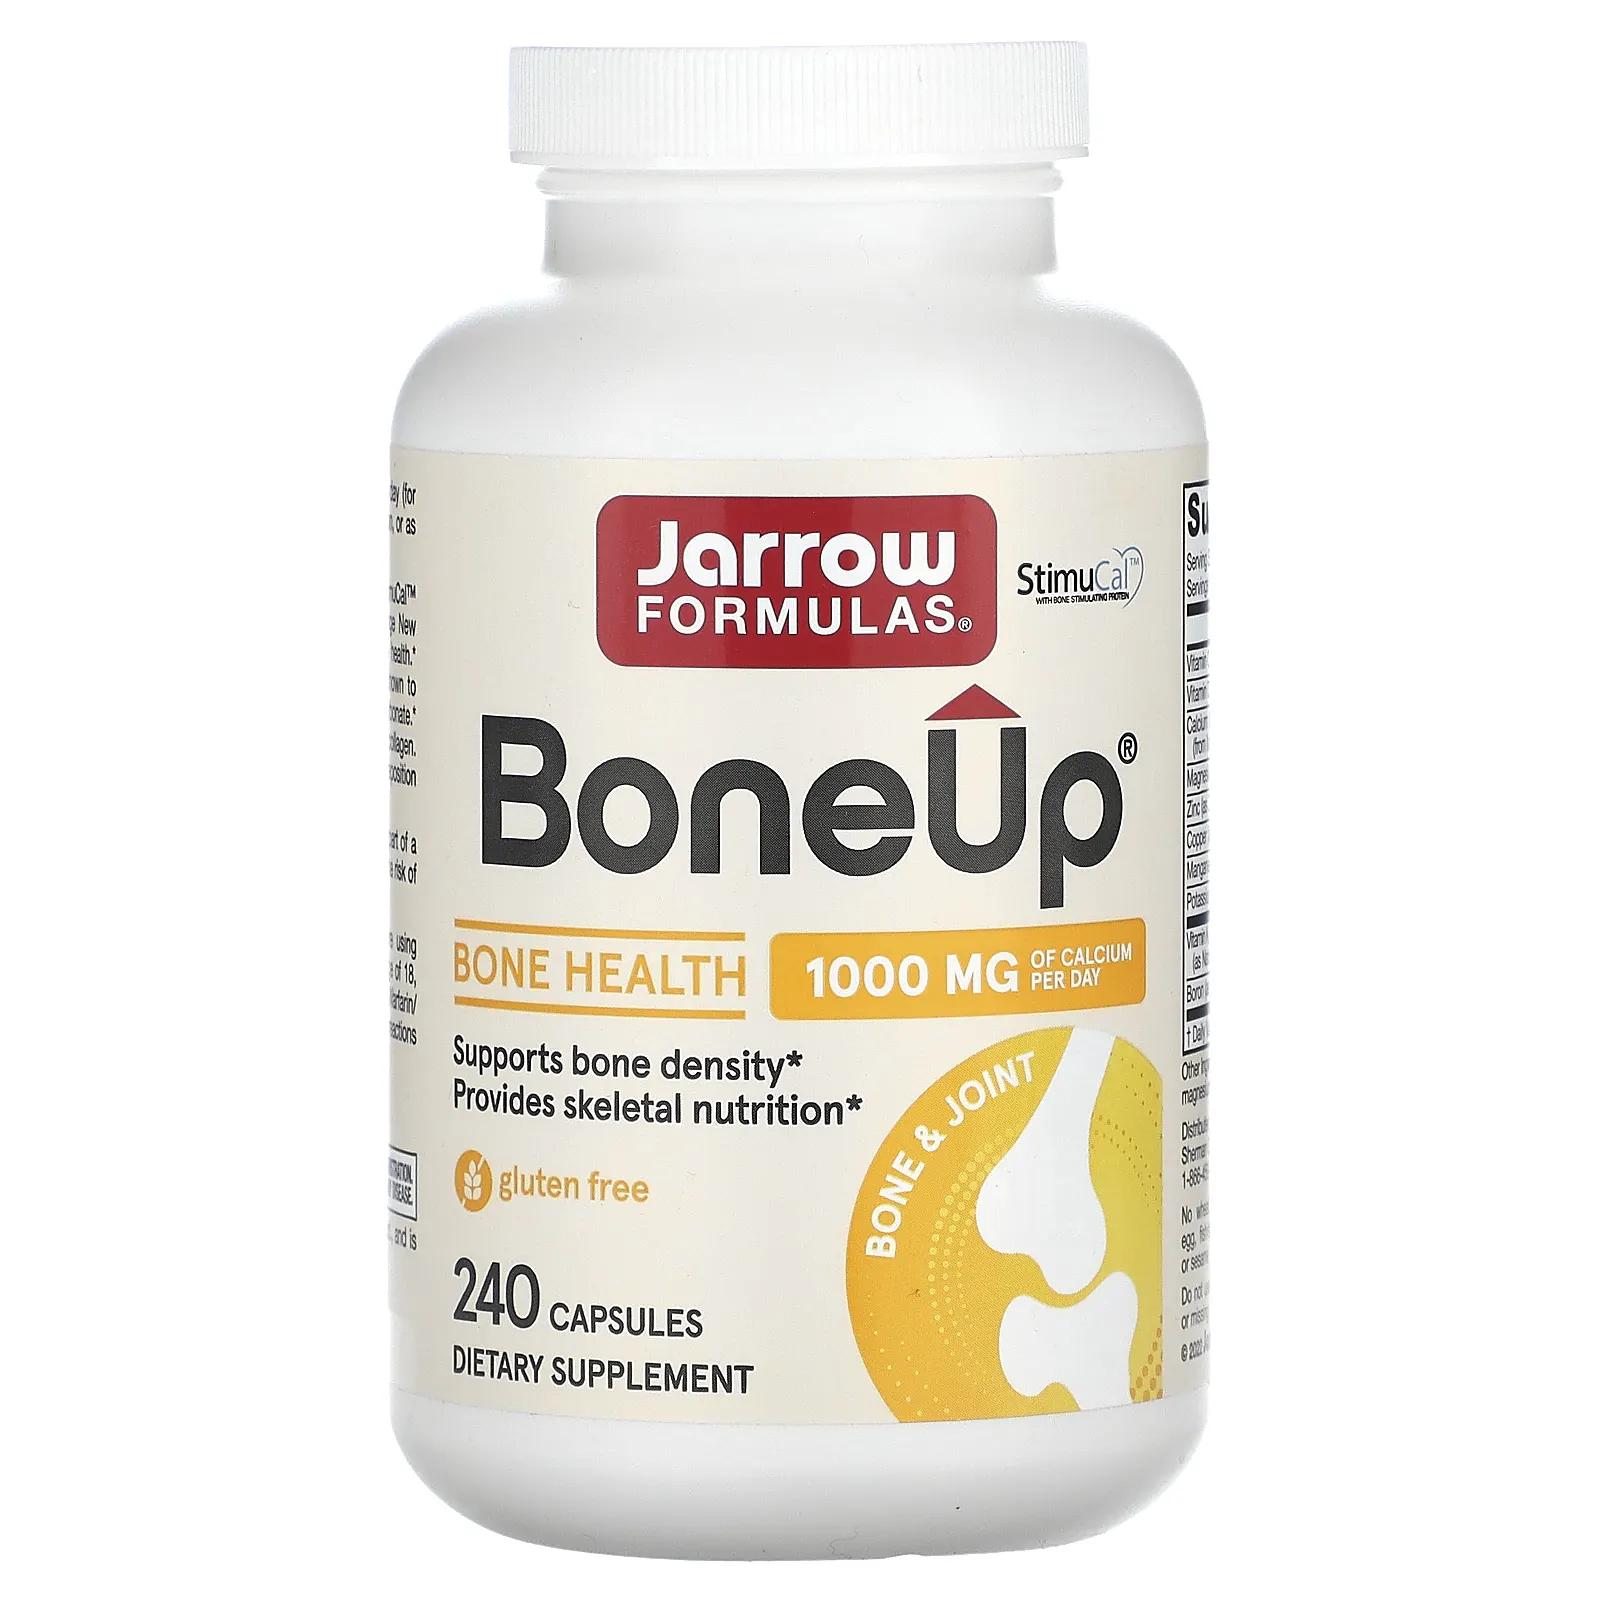 Jarrow Formulas Bone-Up усиленна формула кальция 240 капсул поддержка здоровья костей bone up 240 капсул jarrow formulas